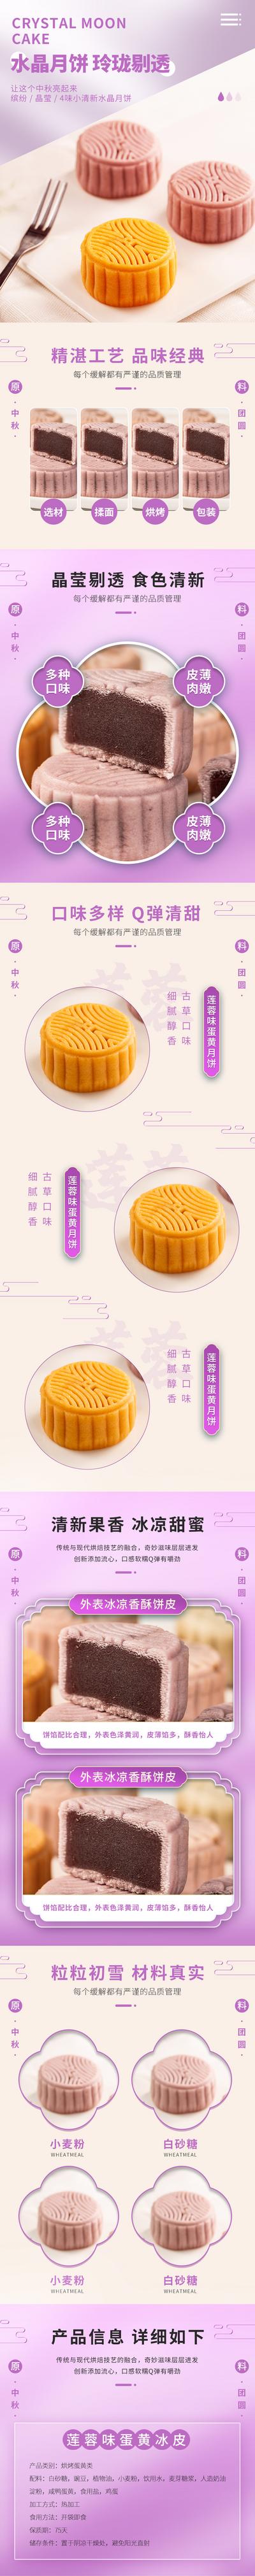 南门网 中国风紫色清新中秋节食品月饼礼品详情页模板